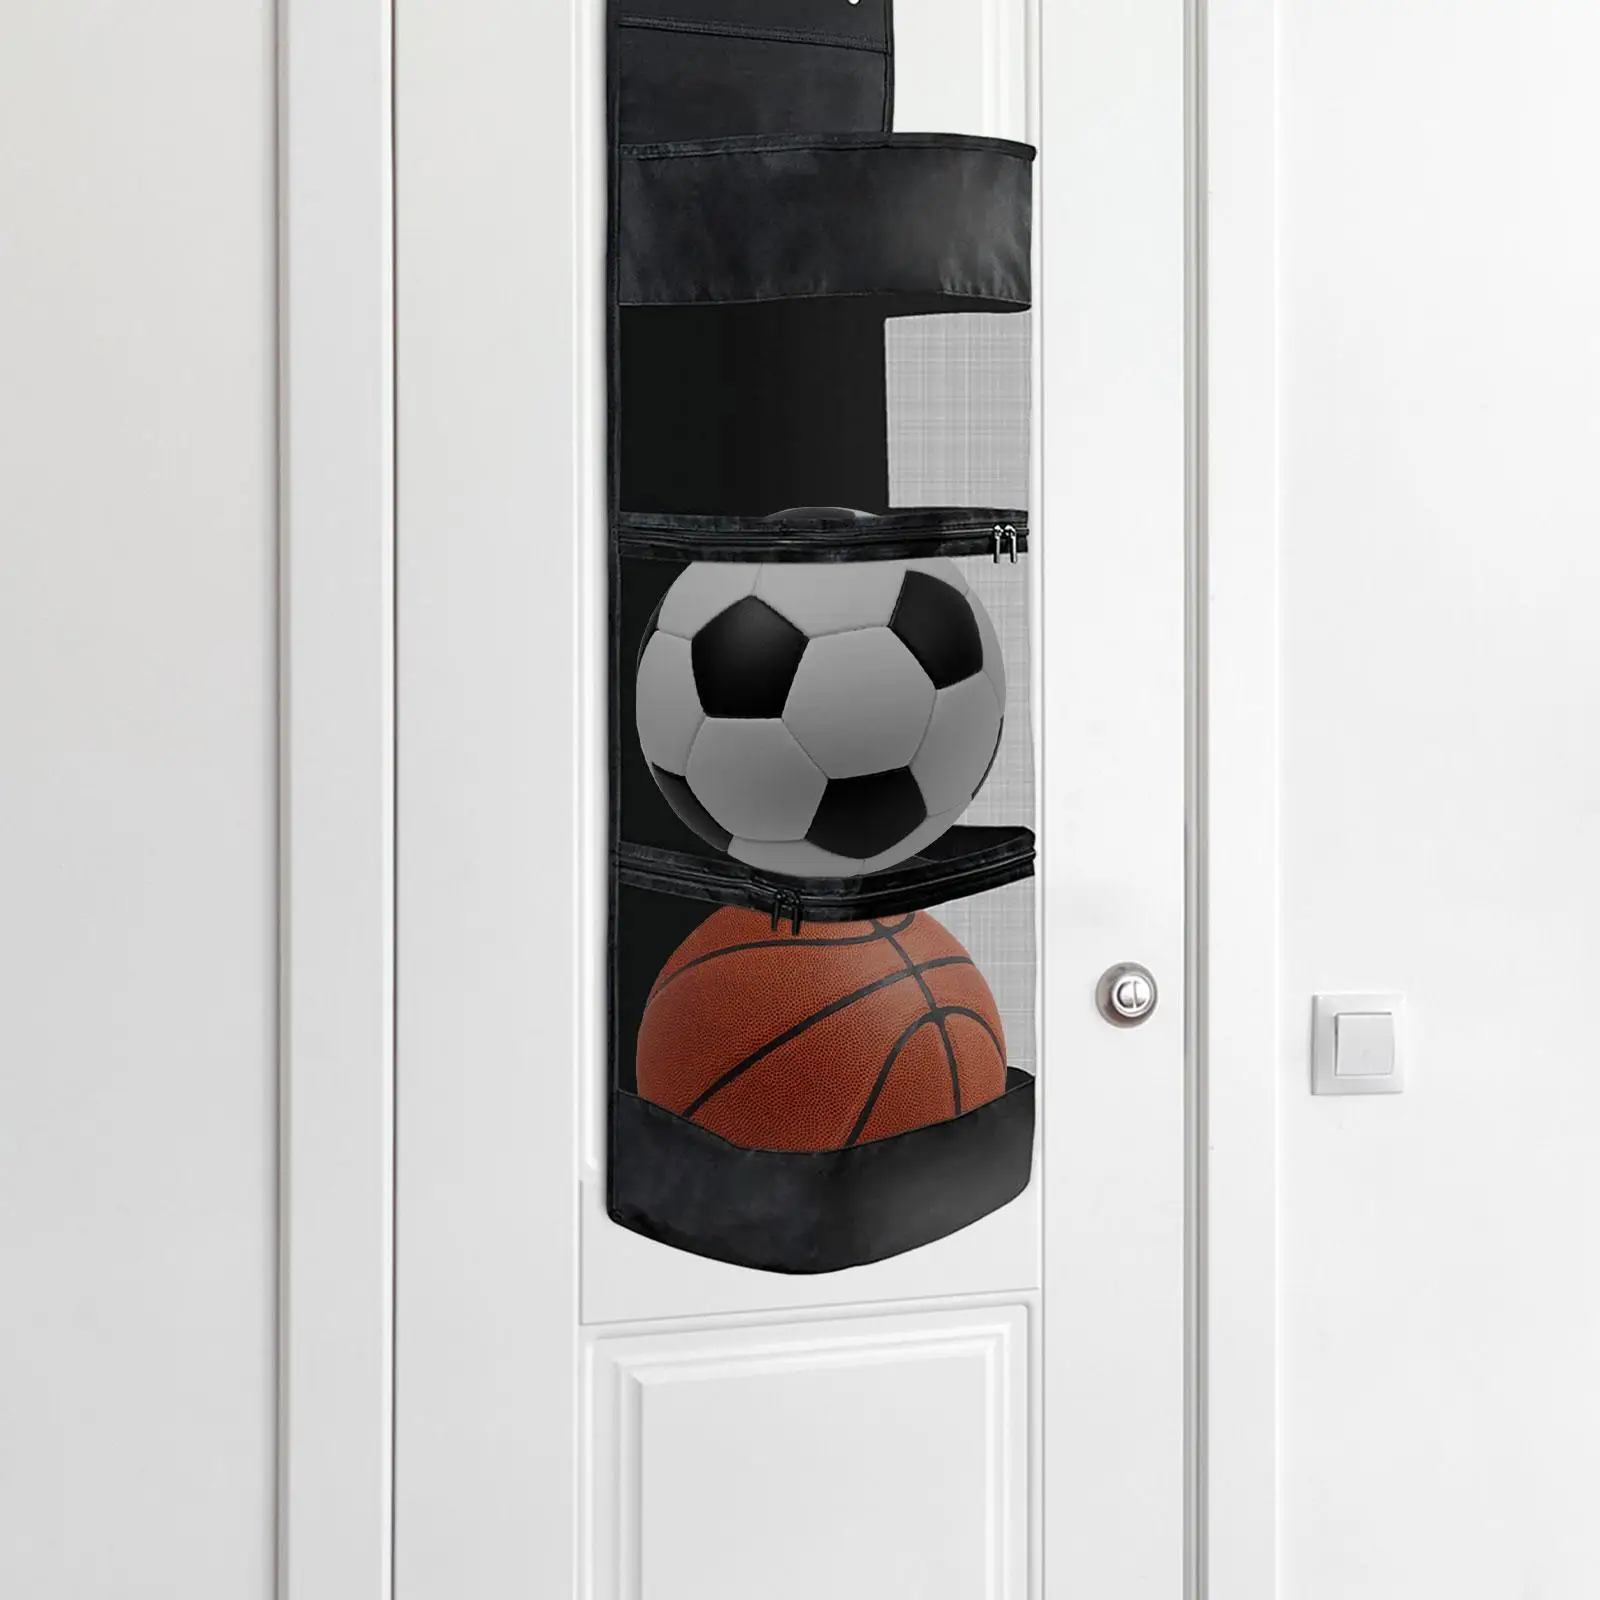 over Door Hanging Organizer Durable Garage Equipment Organizer for Basketball Tennis Sports Gear Volleyball Toy Storage